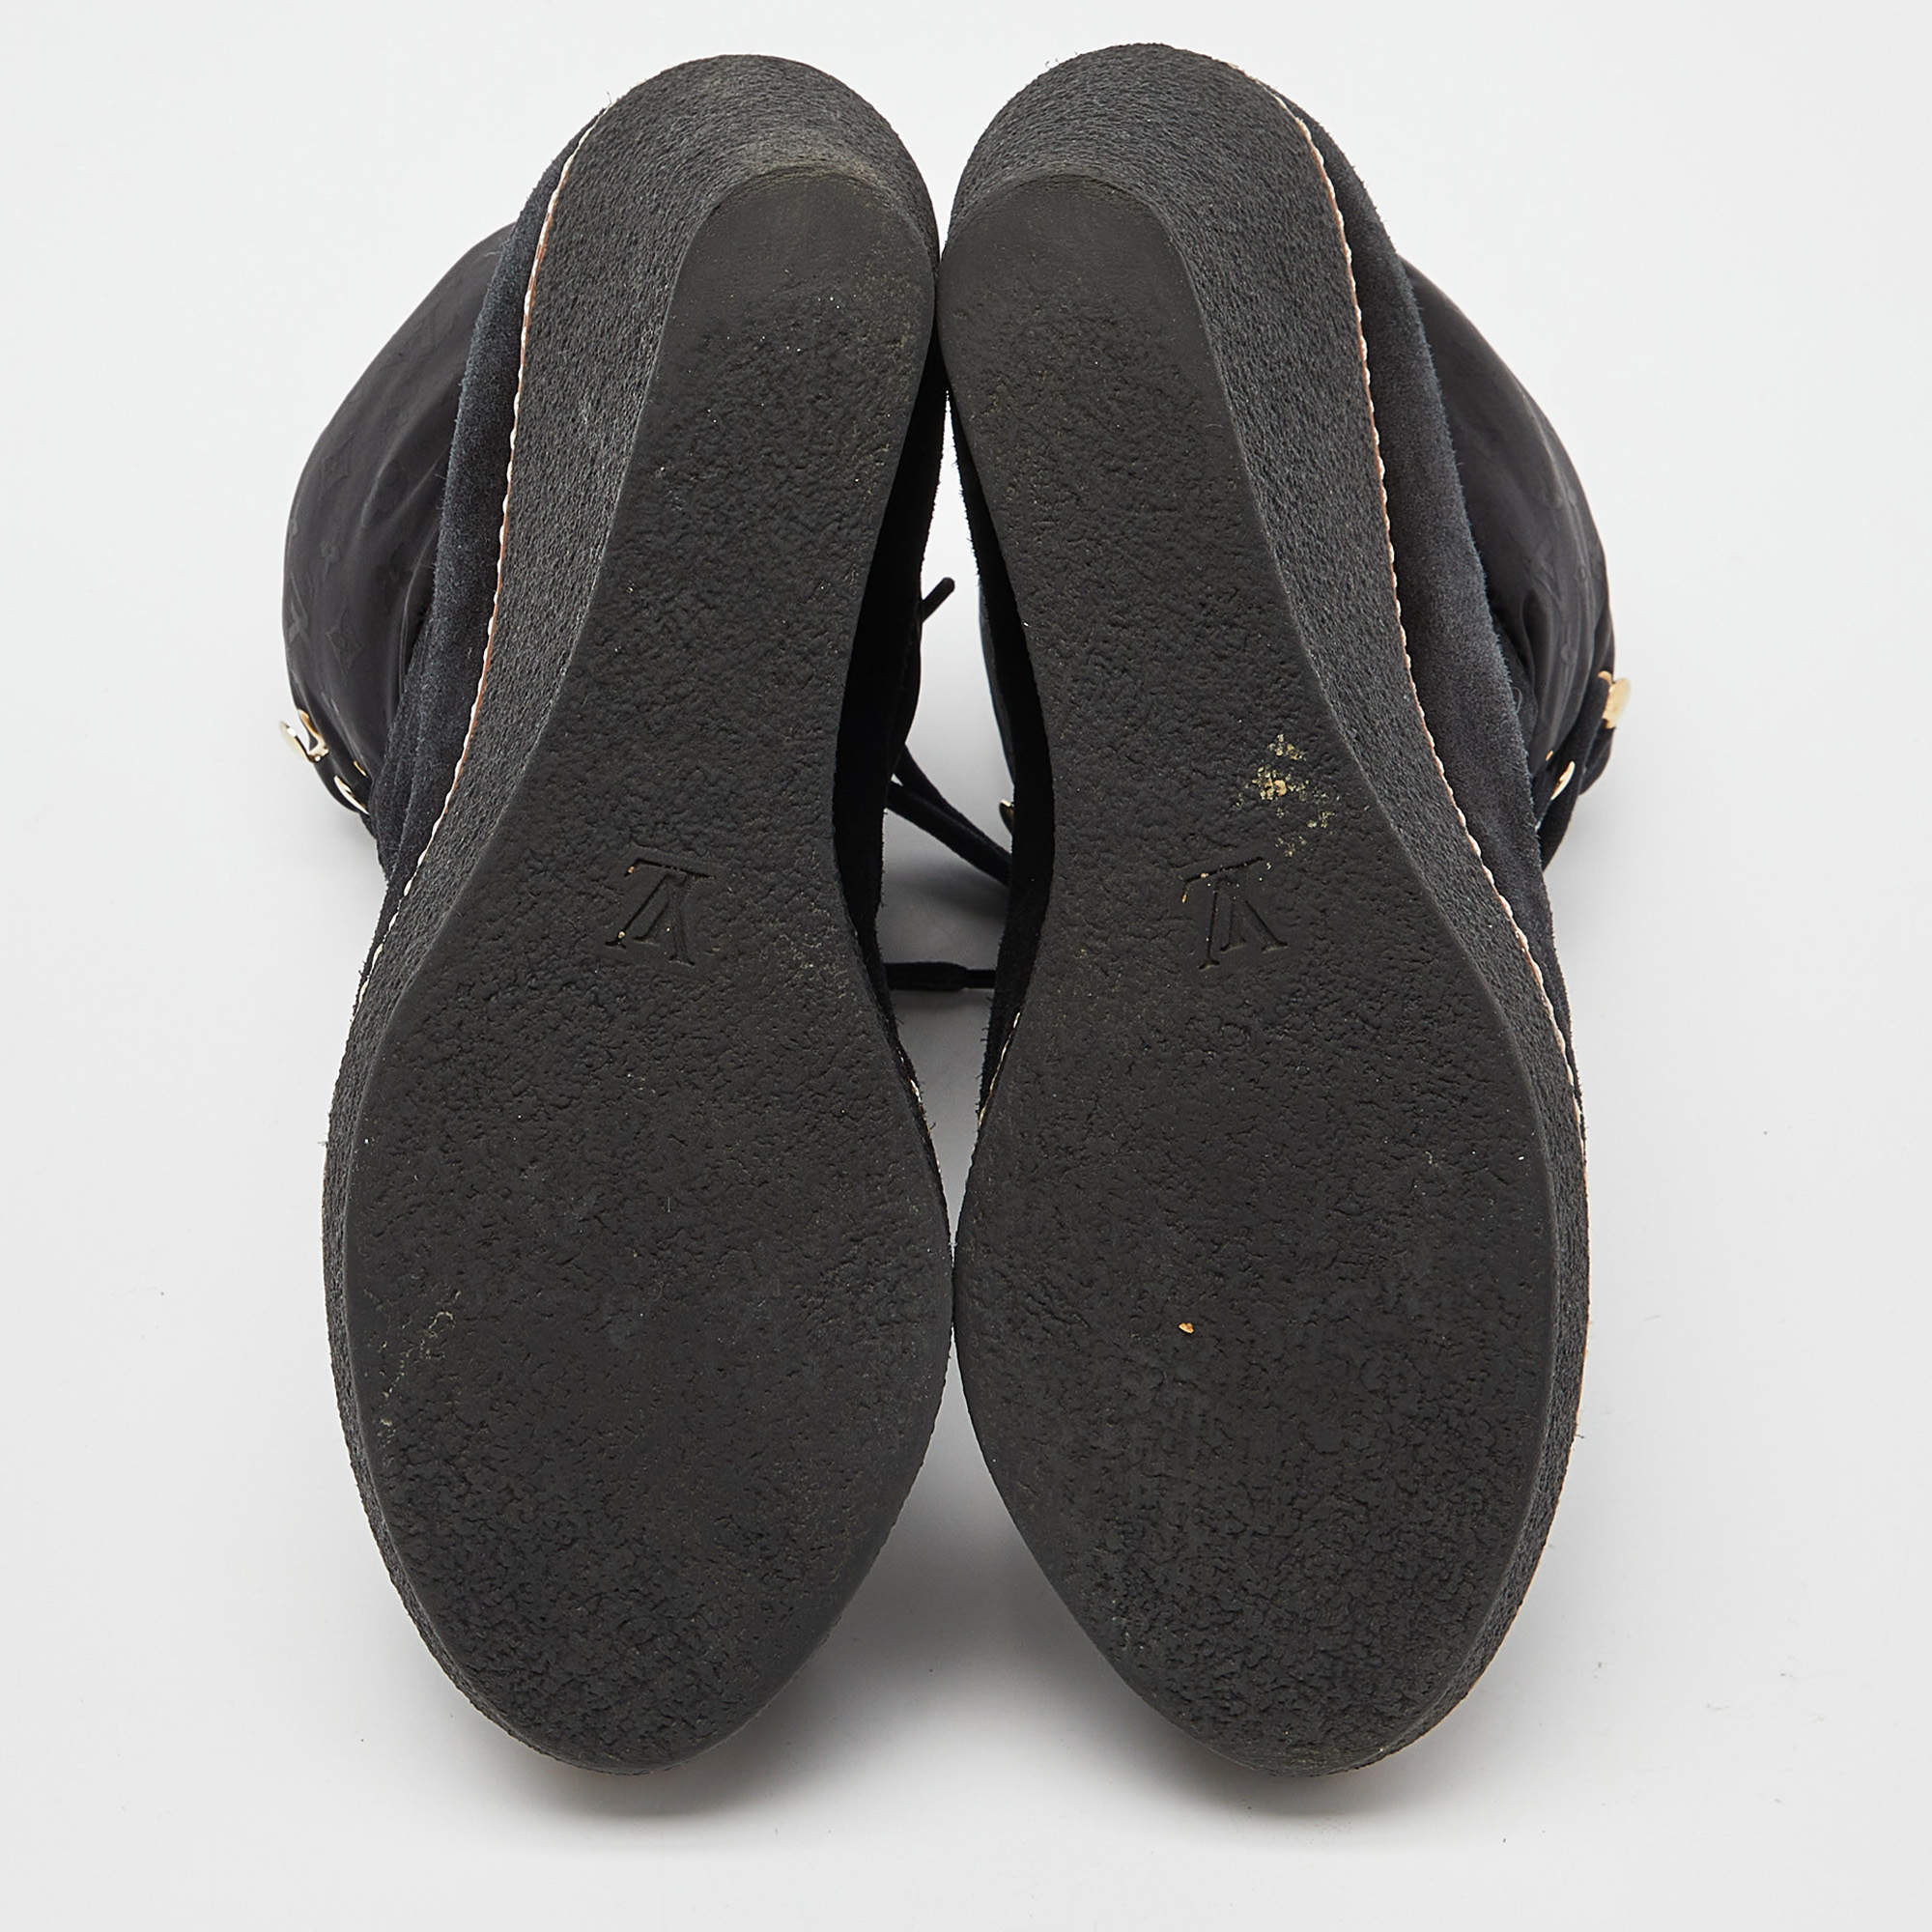 Louis Vuitton Patti Wedge Ankle Boot 9,5Cm (1A9CLA, 1A9CKV)